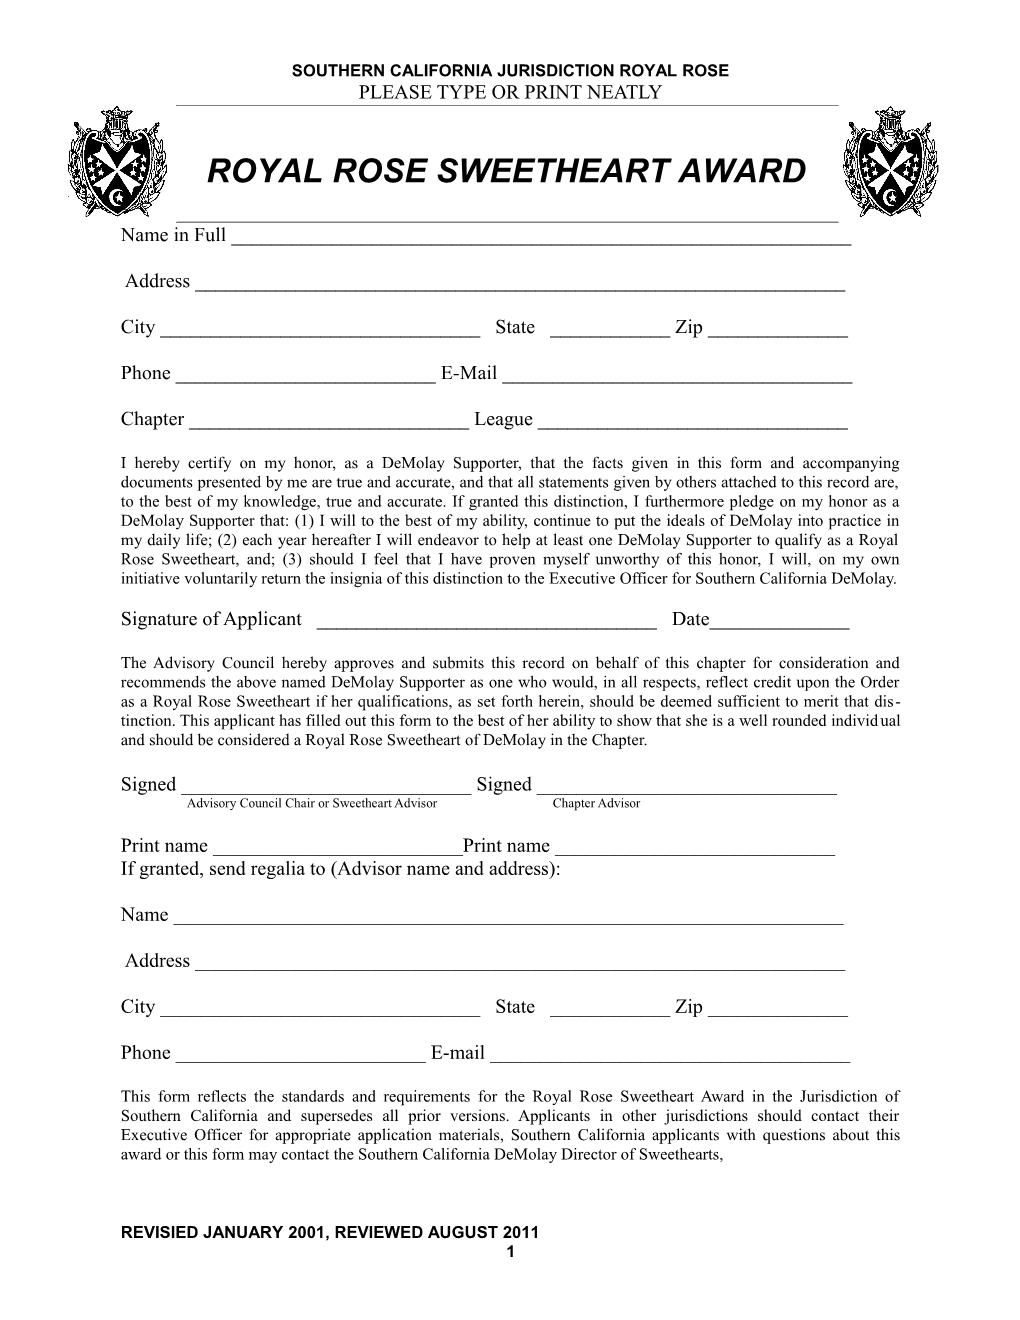 Southern California Jurisdiction Royal Rose